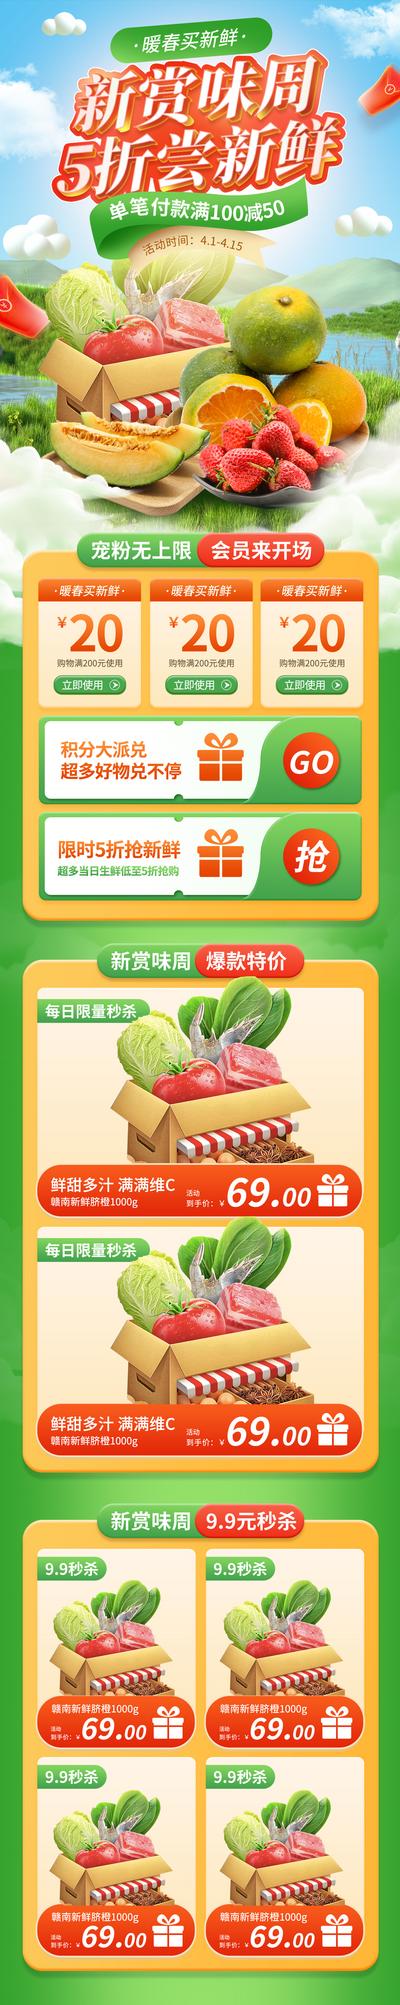 南门网 广告 海报 电商 水果 生鲜 蔬菜 首页 详情页 专题